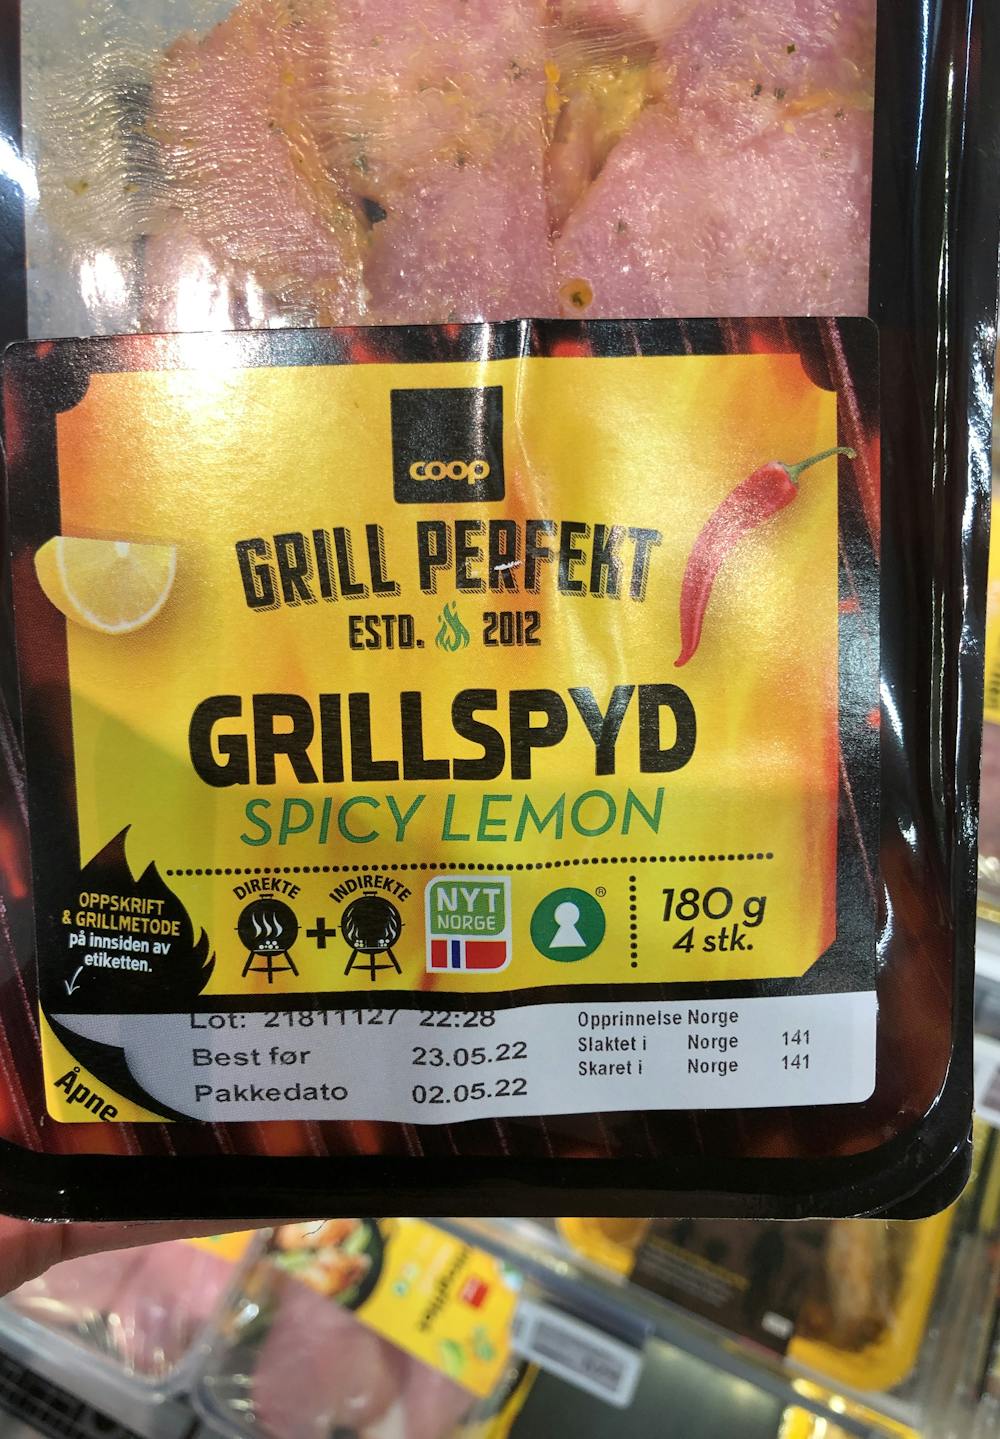 Grillspyd Spicy Lemon, Coop